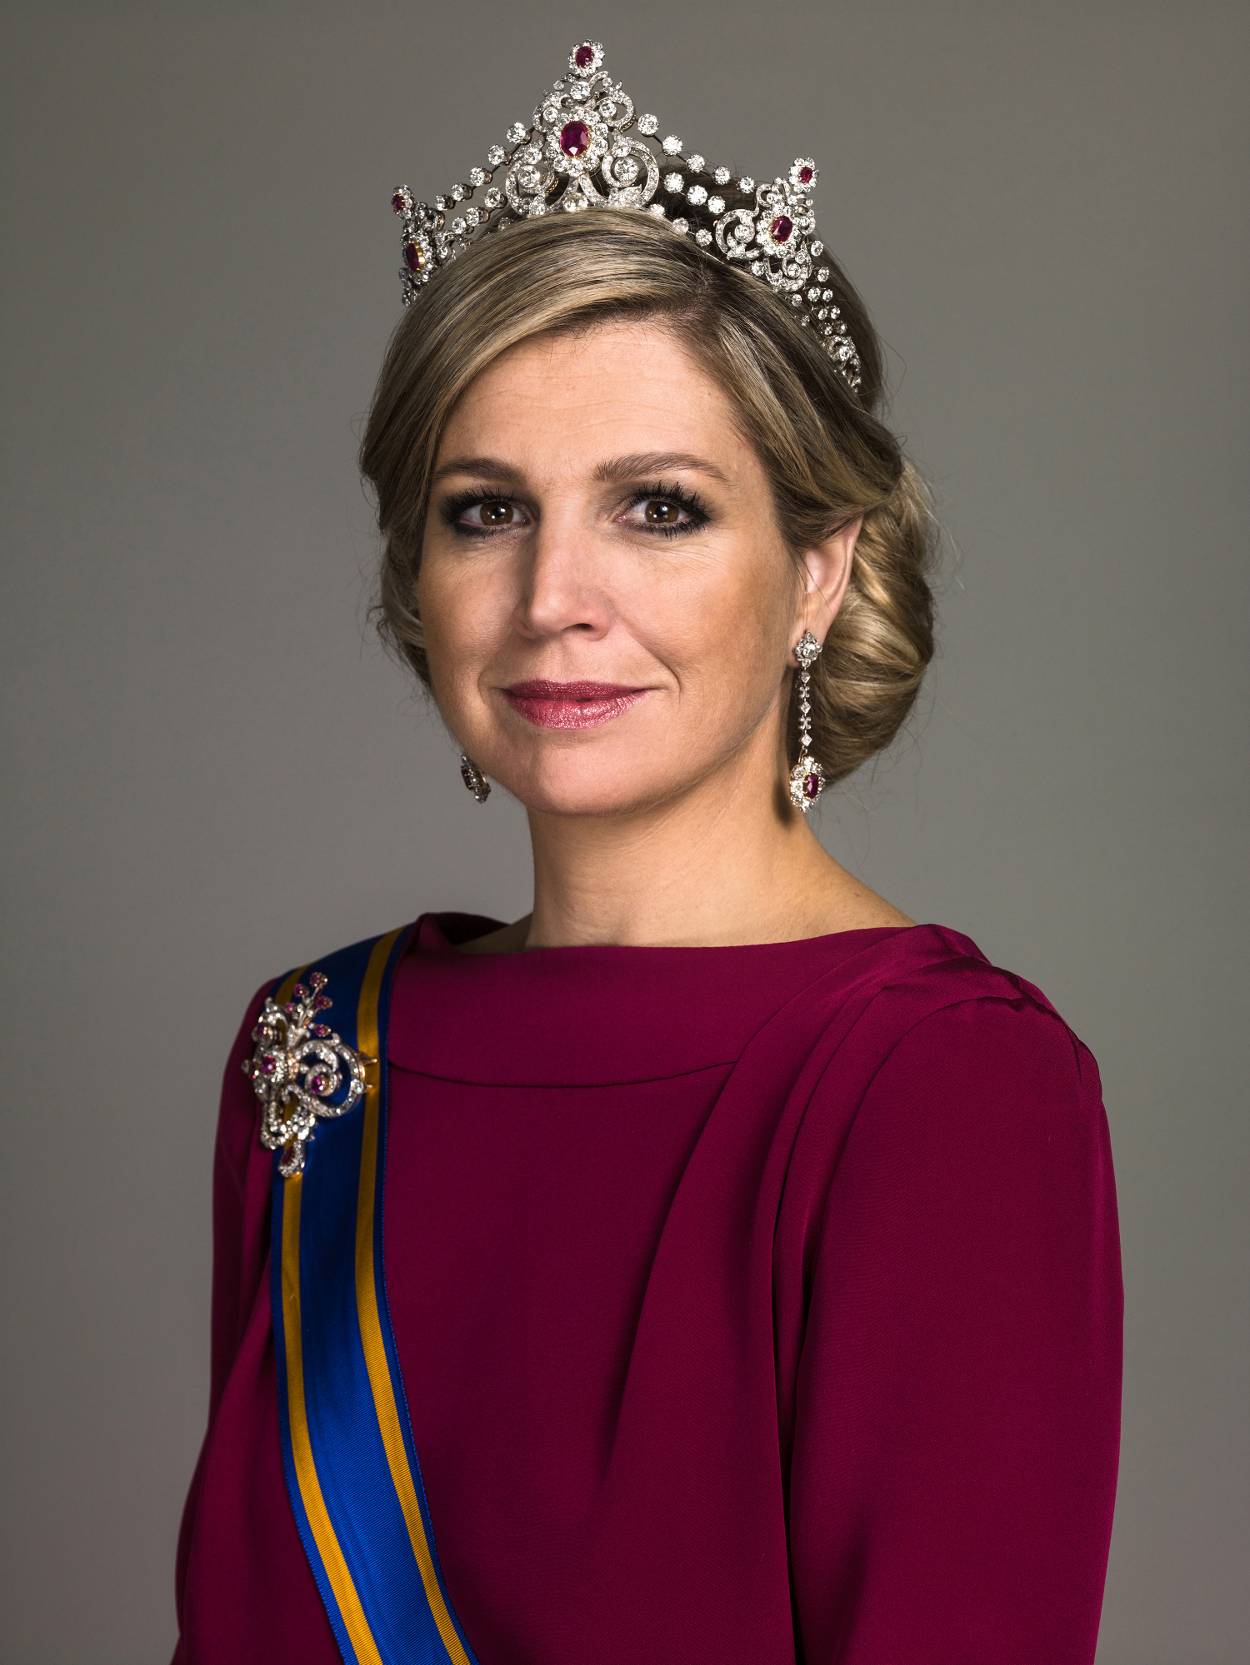 Koningin Maxima met de Mellerio parure met robijnen Kennisbank Zilver.nl